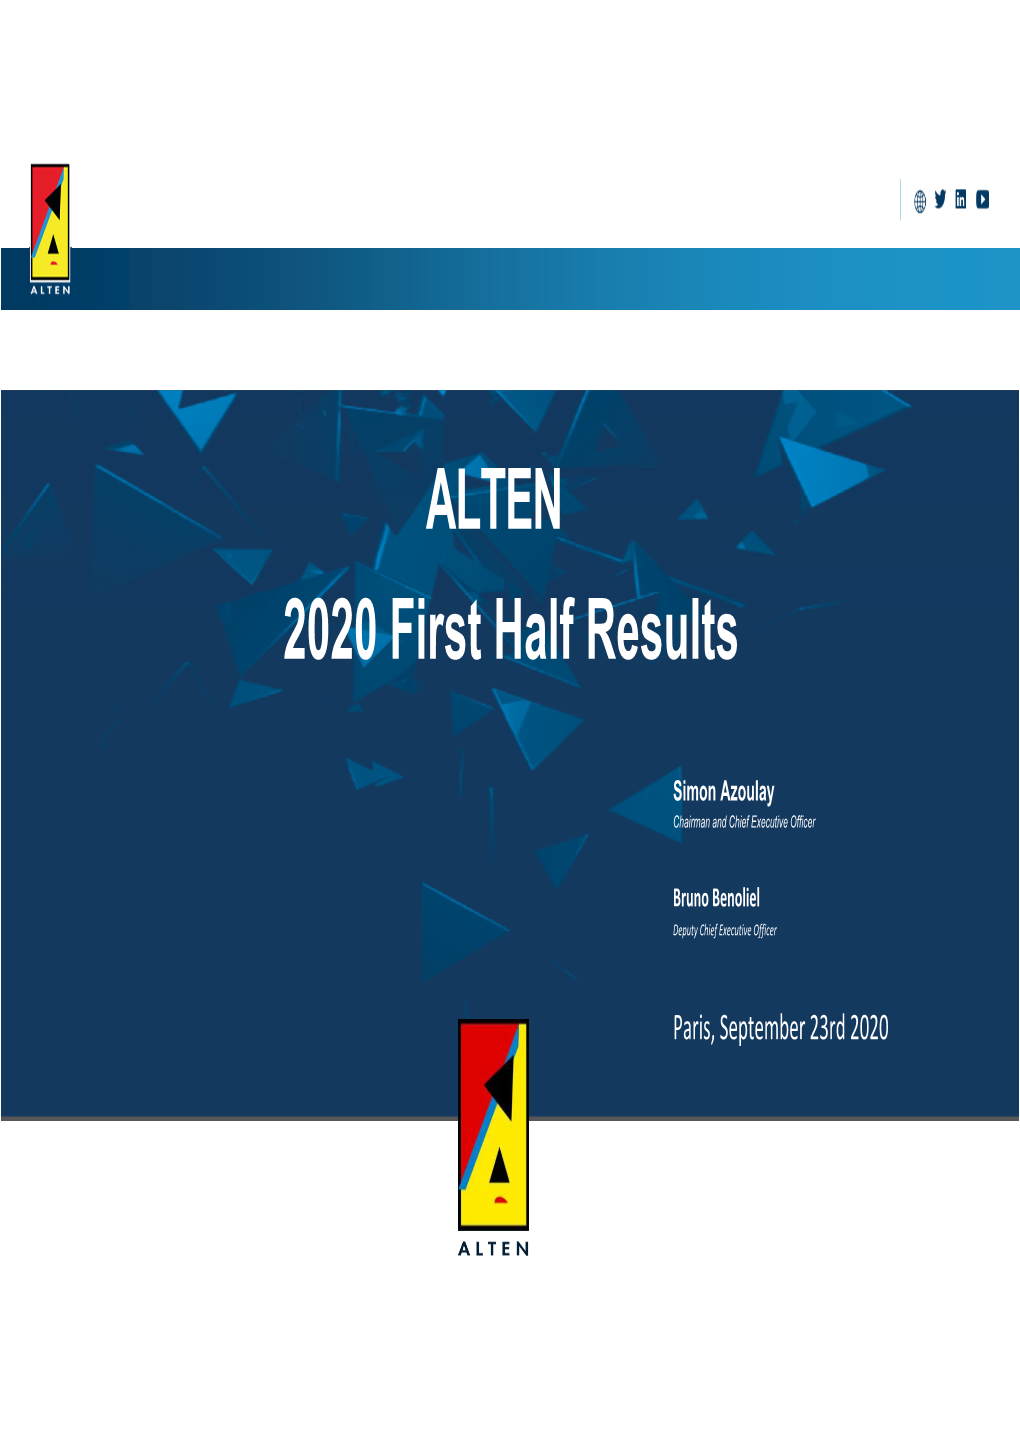 ALTEN 2020 First Half Results